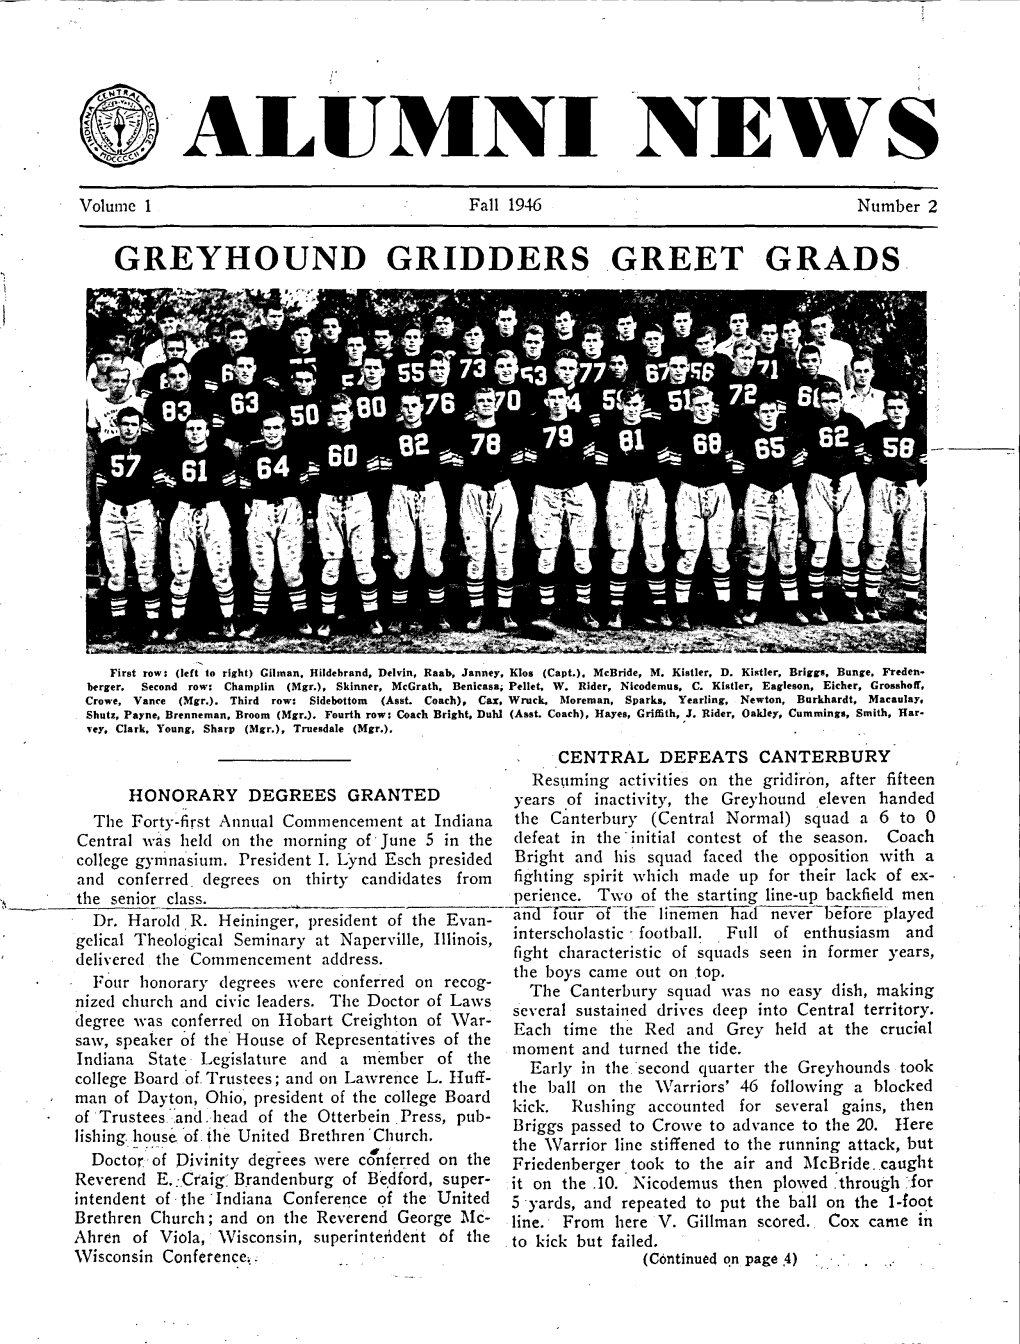 Greyhound Gridders Greet Grads